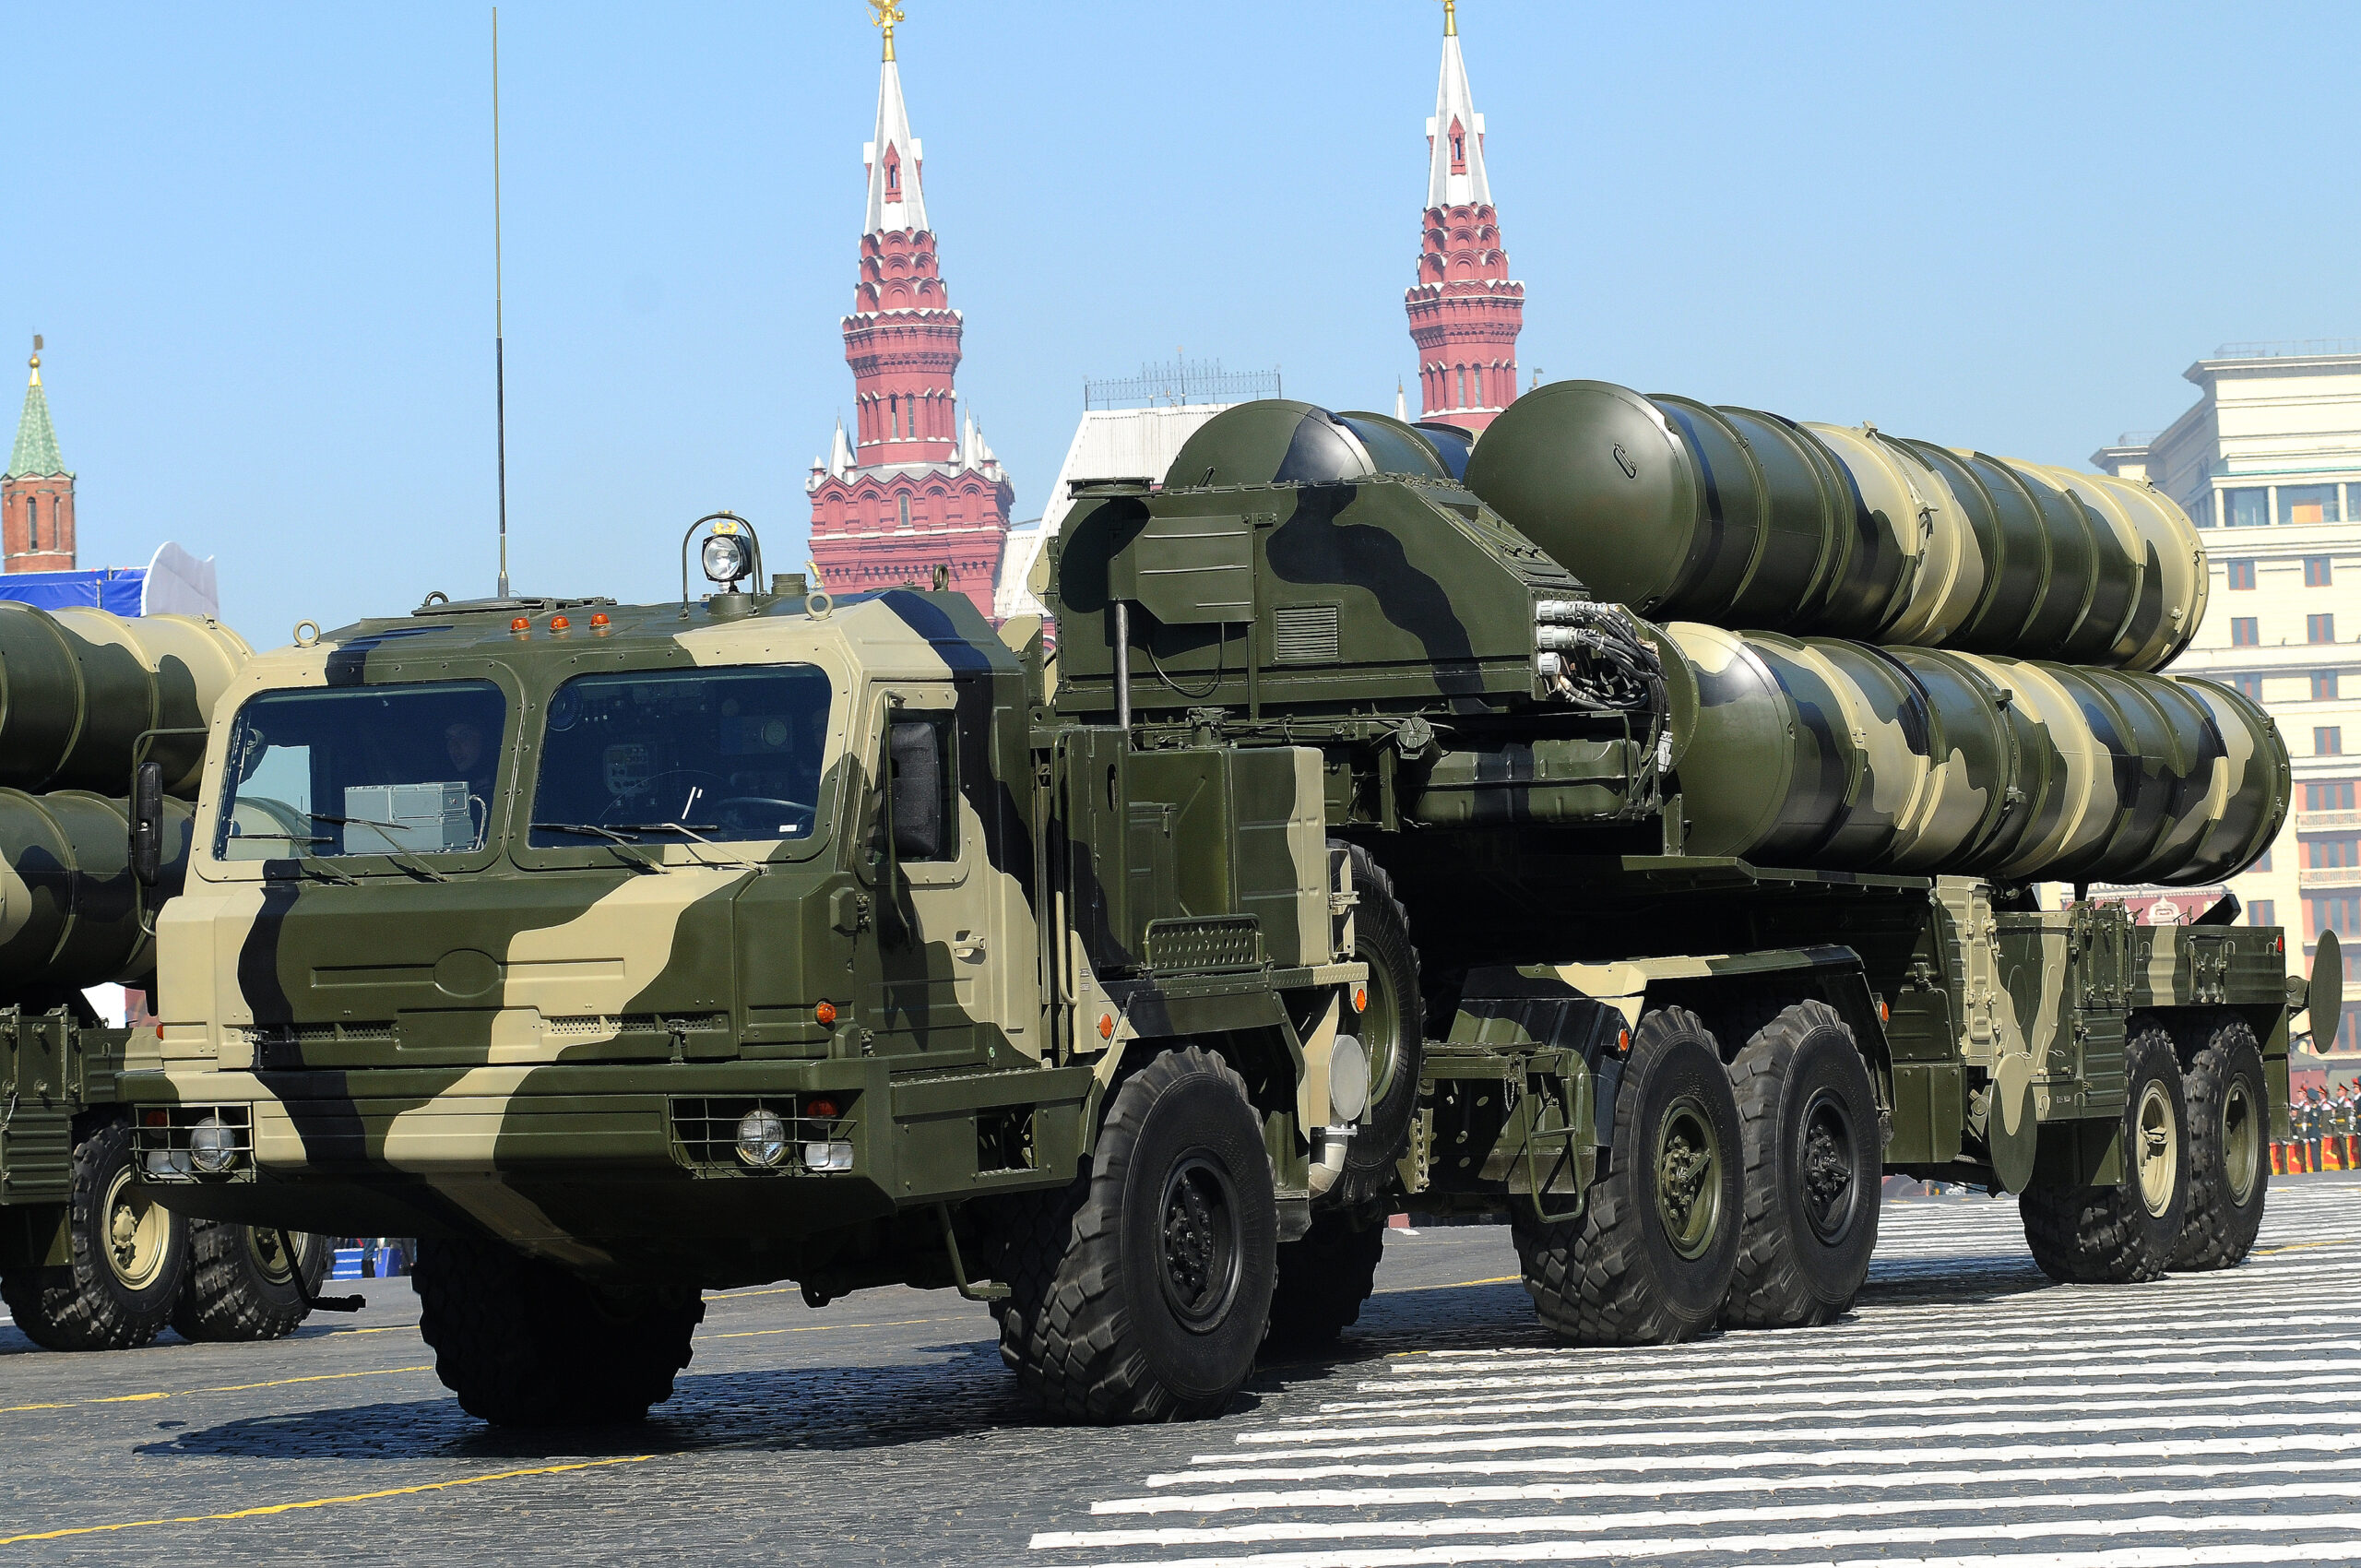 Уязвимость ПВО ставит под угрозу стратегические объекты в РФ — британская разведка